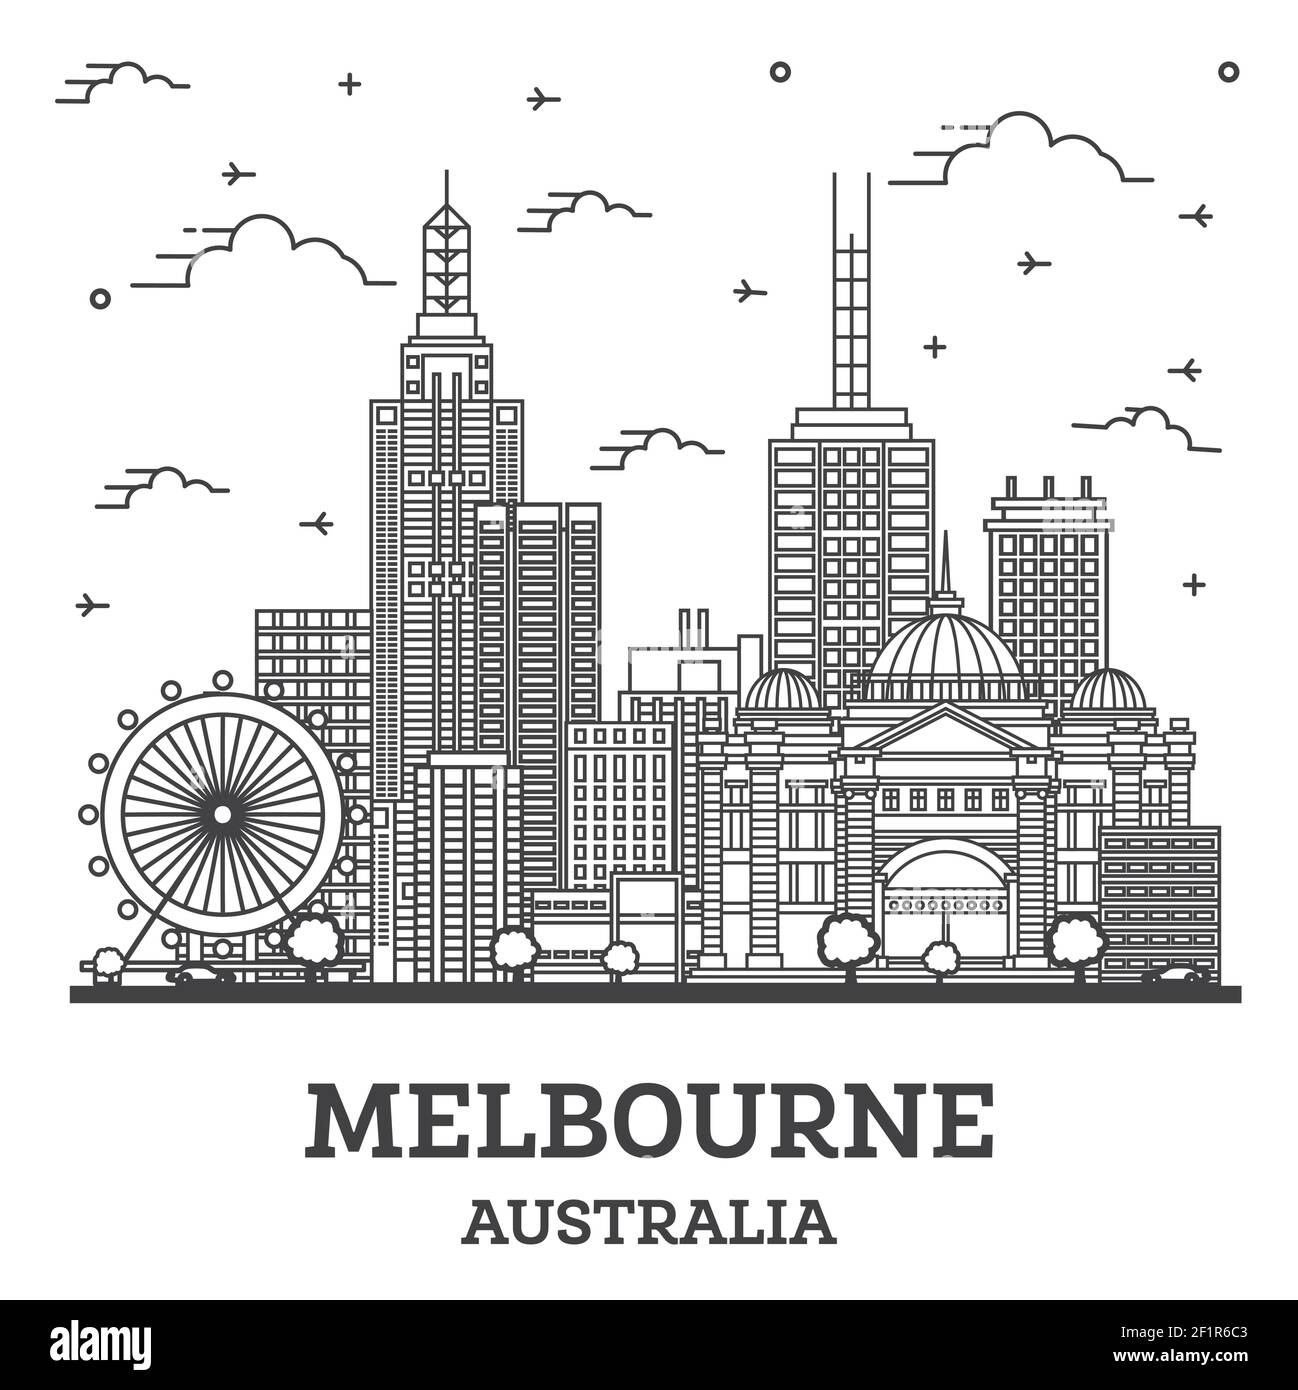 Outline Melbourne Australia City Skyline avec bâtiments modernes et historiques isolés sur White. Illustration vectorielle. Melbourne Cityscape avec des sites touristiques Illustration de Vecteur